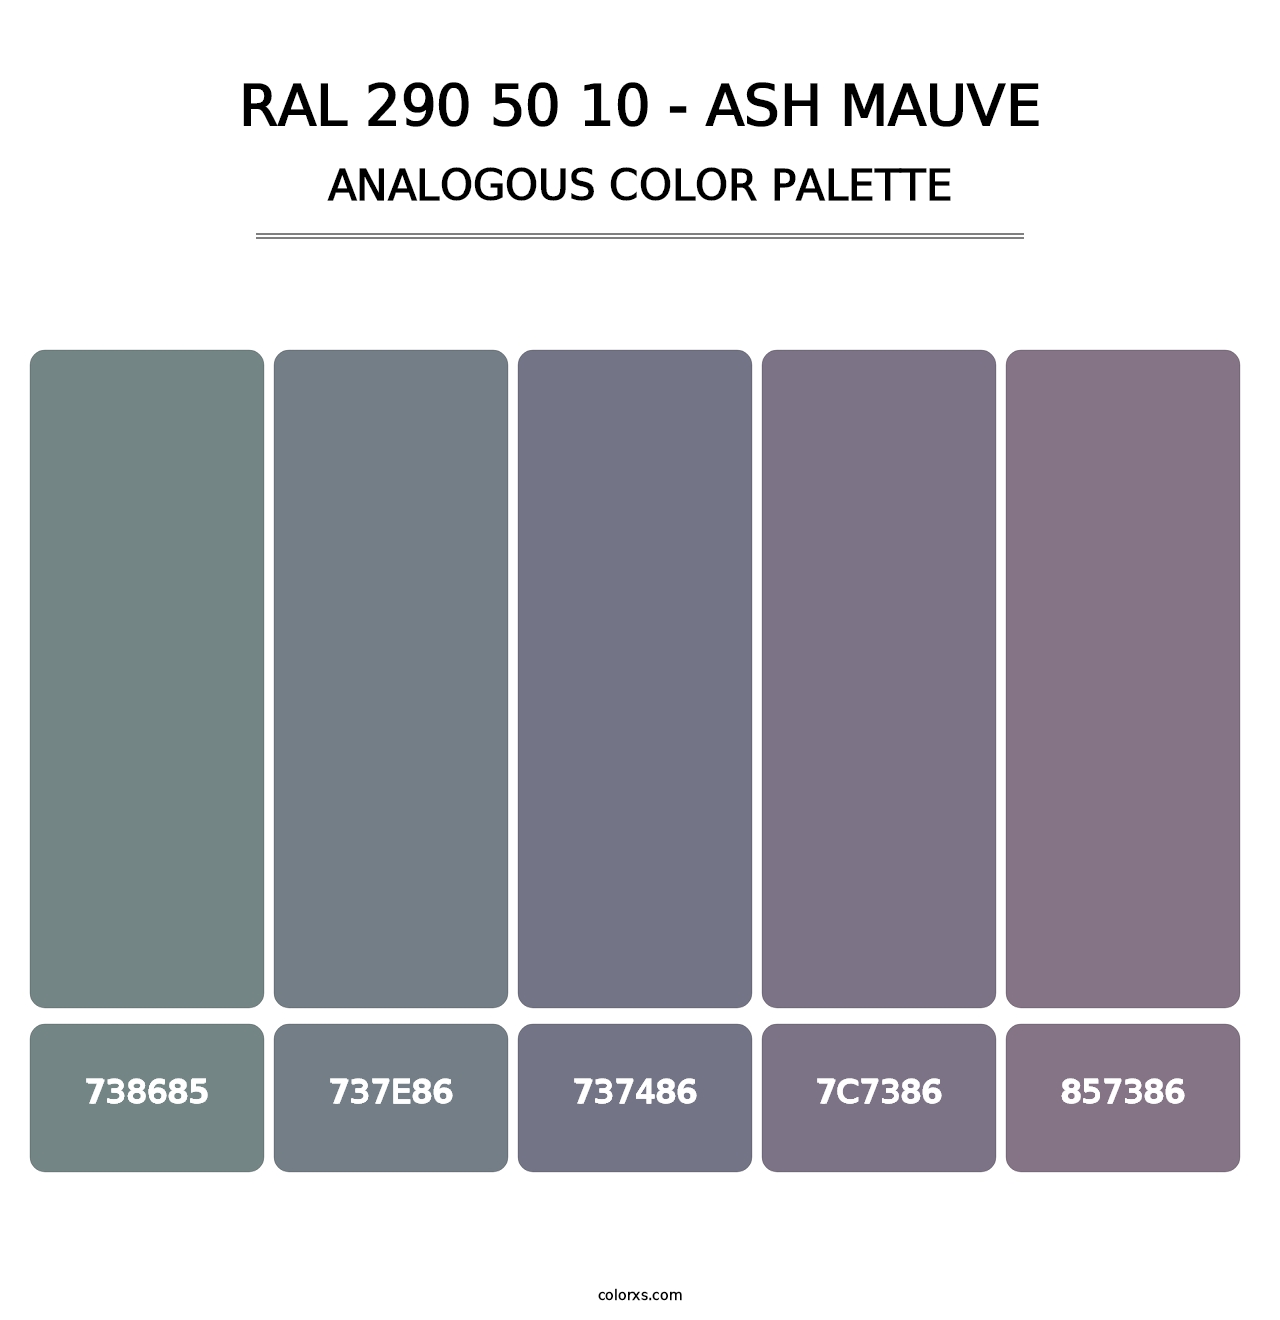 RAL 290 50 10 - Ash Mauve - Analogous Color Palette